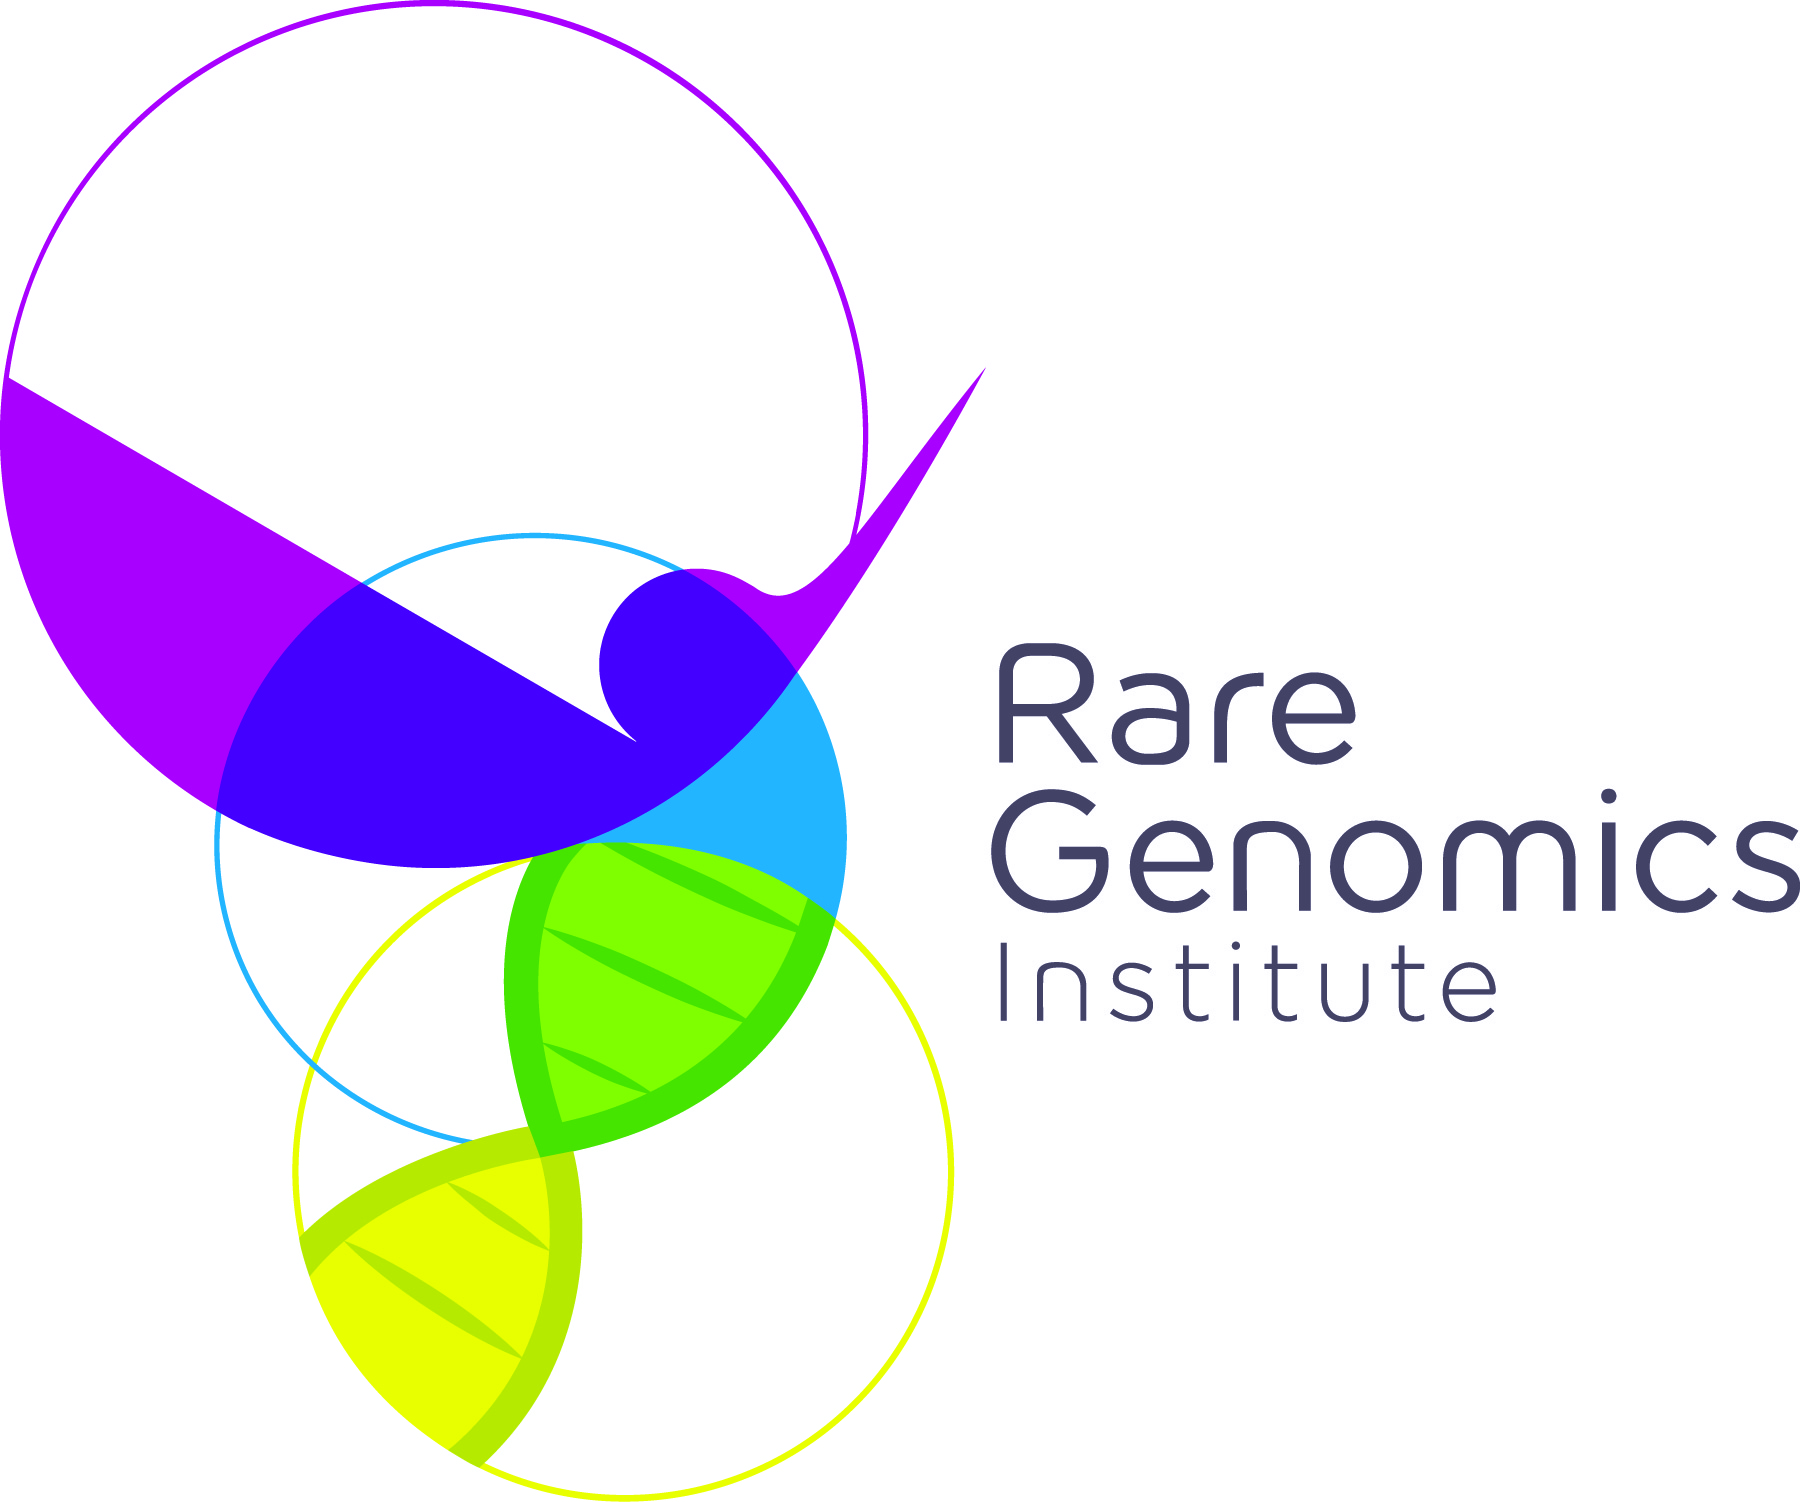 Rare Genomics Institute Logo